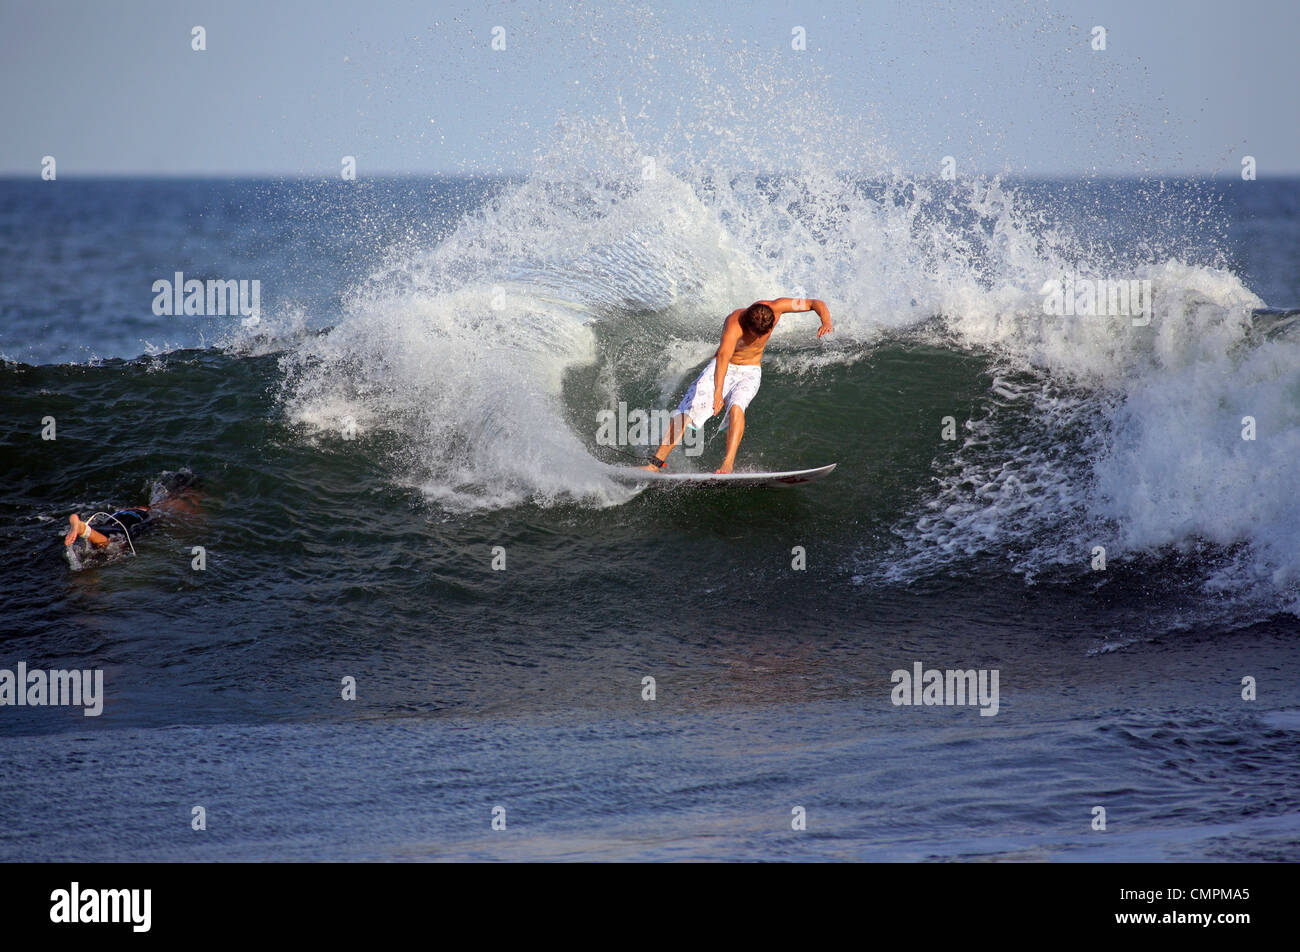 American pro surfer Dane Reynolds surfing at Las Flores in El Salvador. Stock Photo